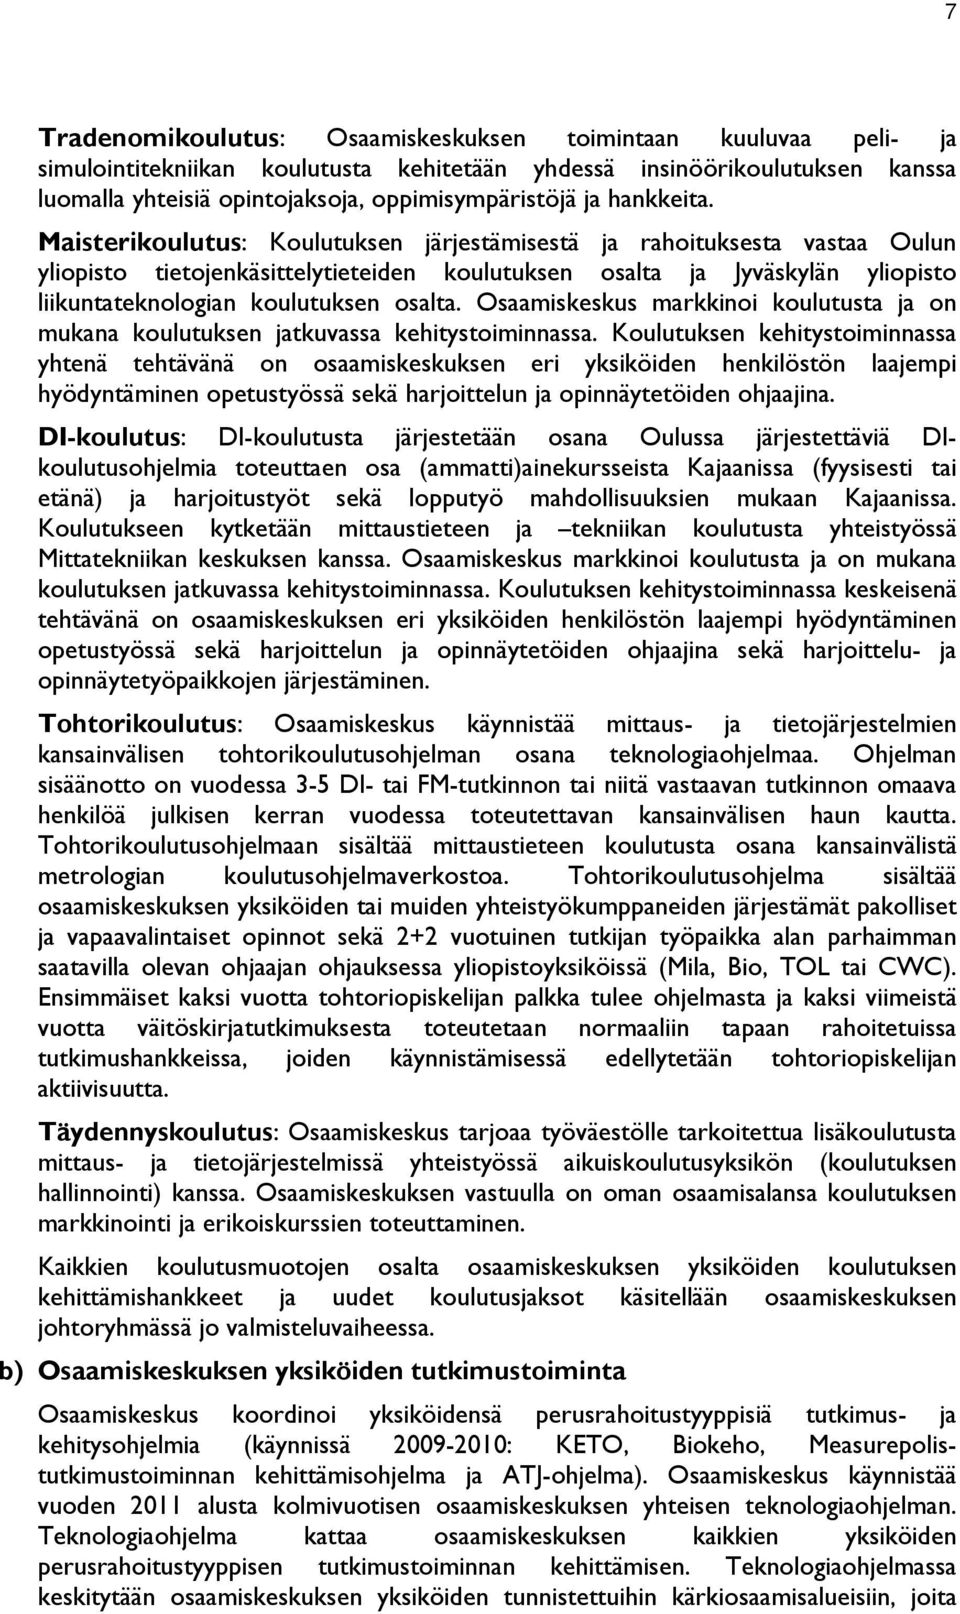 Maisterikoulutus: Koulutuksen järjestämisestä ja rahoituksesta vastaa Oulun yliopisto tietojenkäsittelytieteiden koulutuksen osalta ja Jyväskylän yliopisto liikuntateknologian koulutuksen osalta.